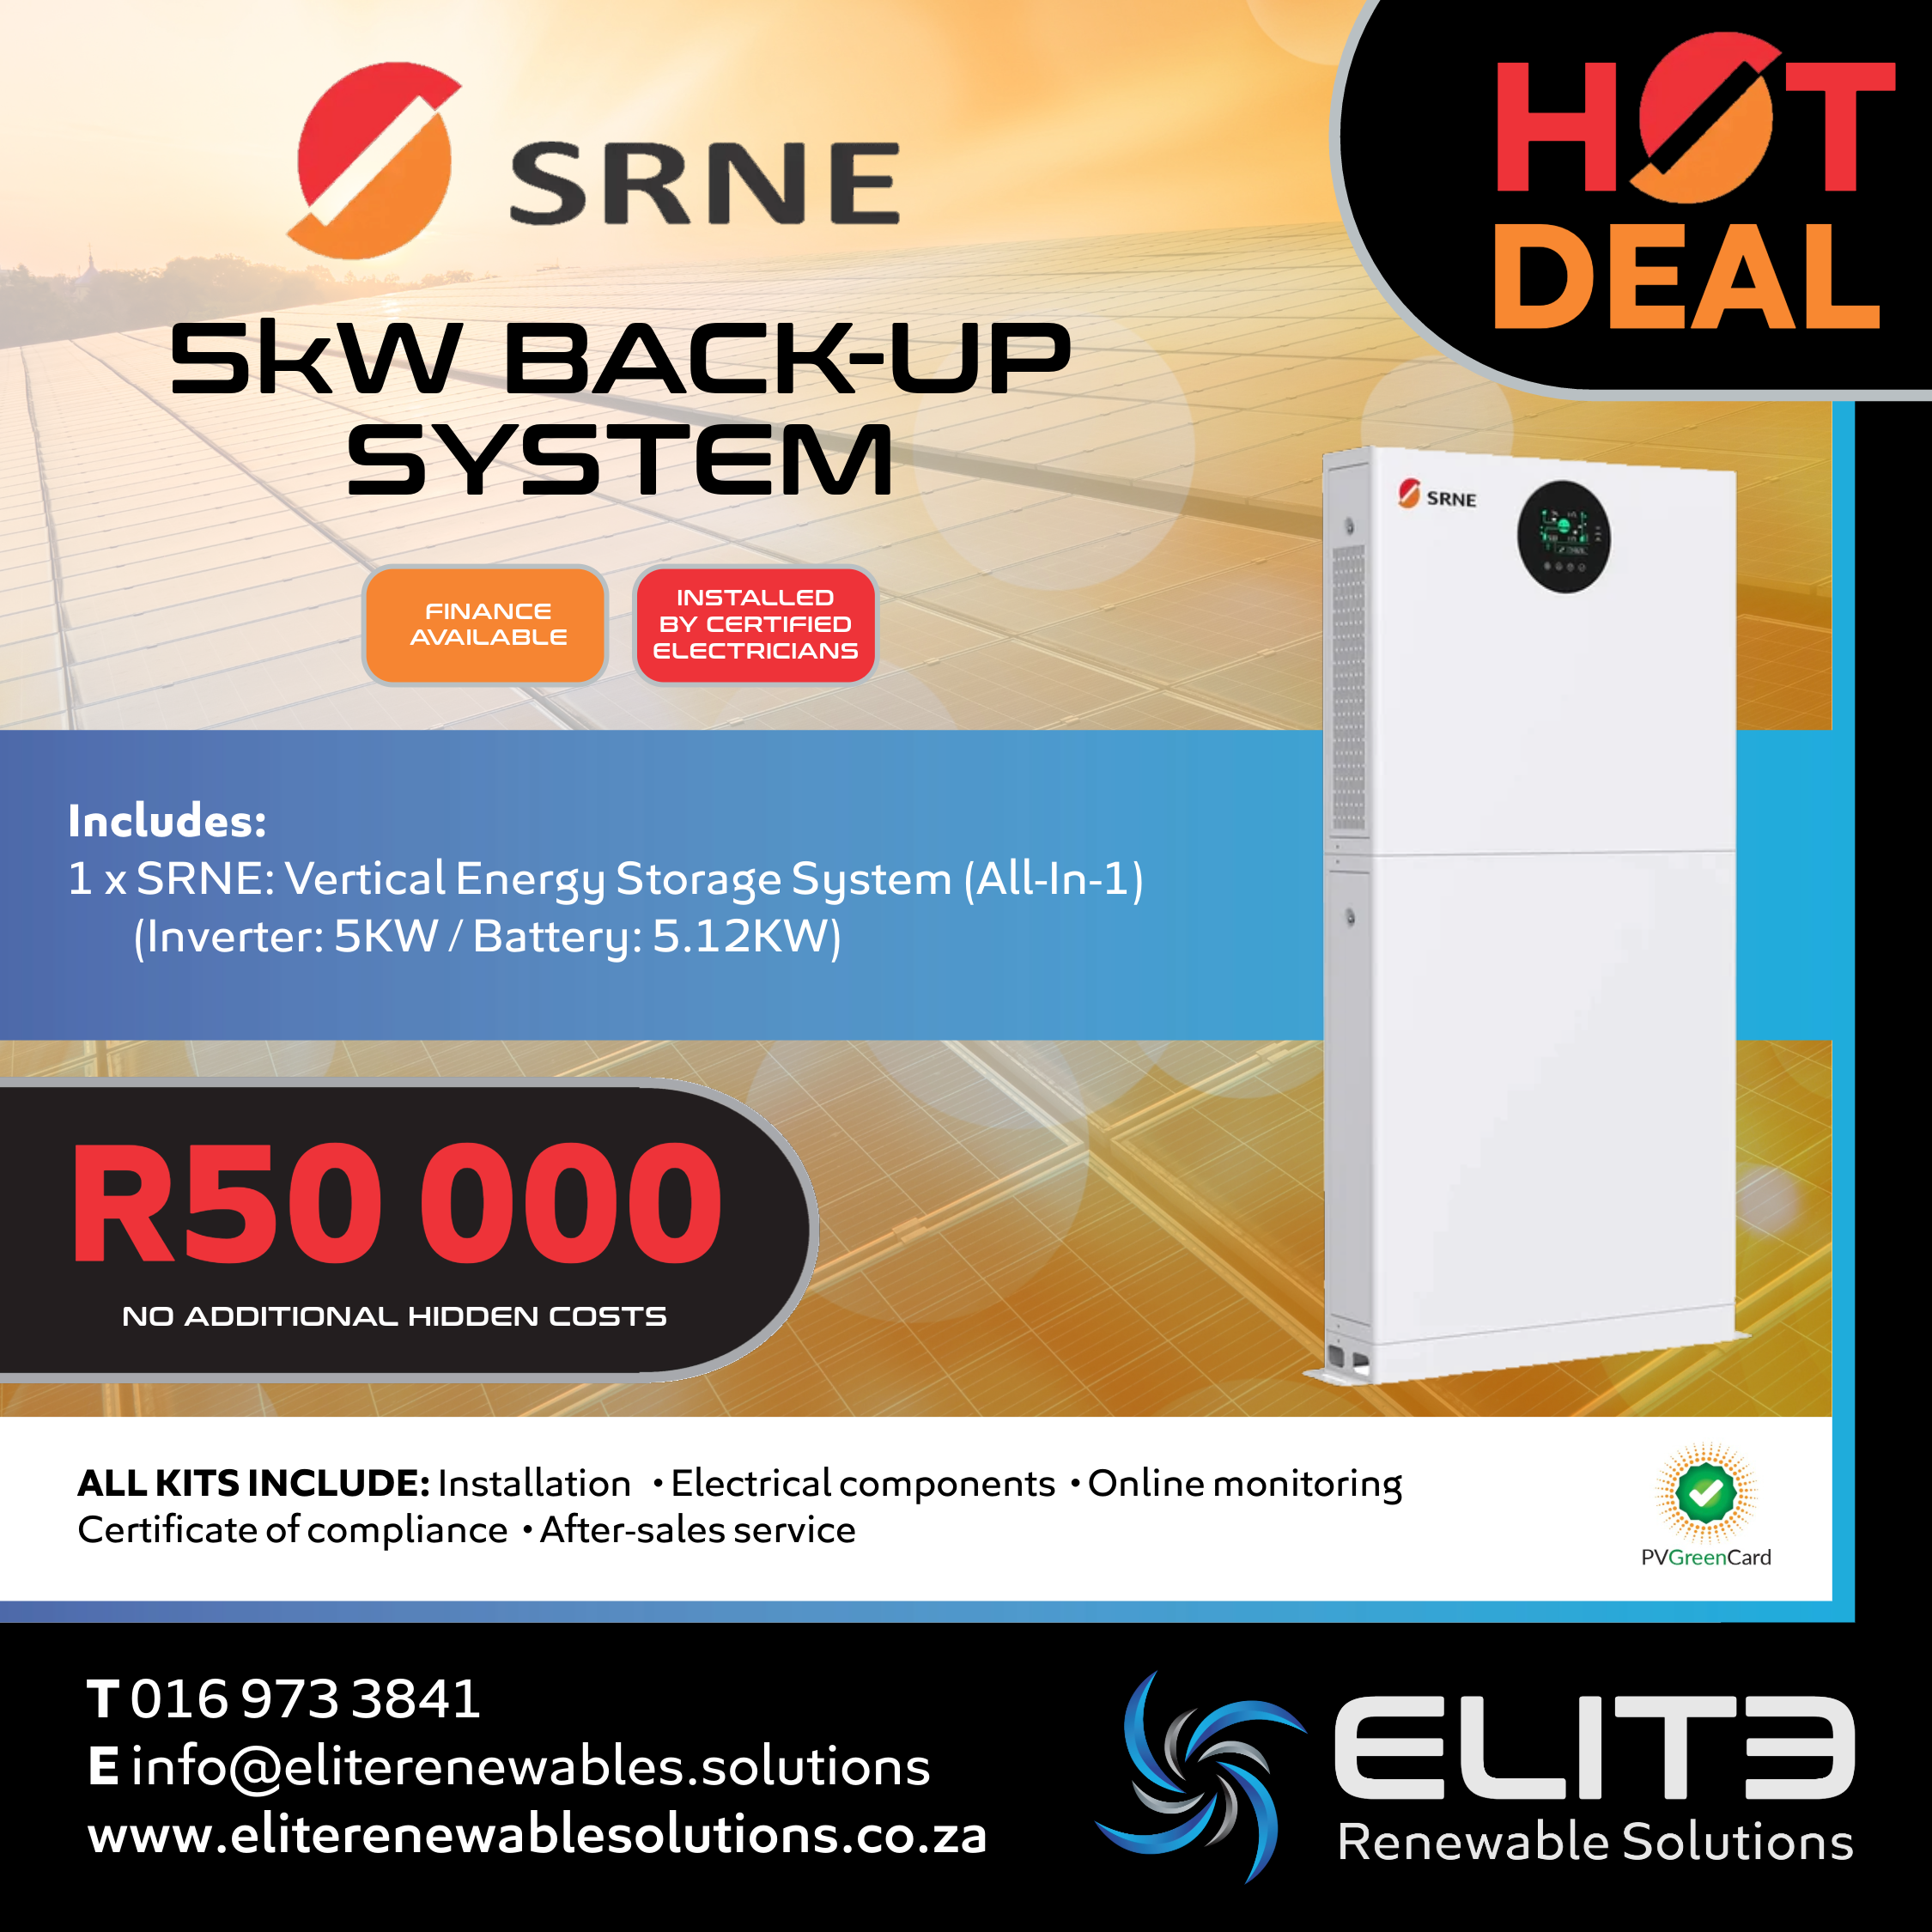 SRNE 5Kw Back-up System - Elite Renewable Solutions